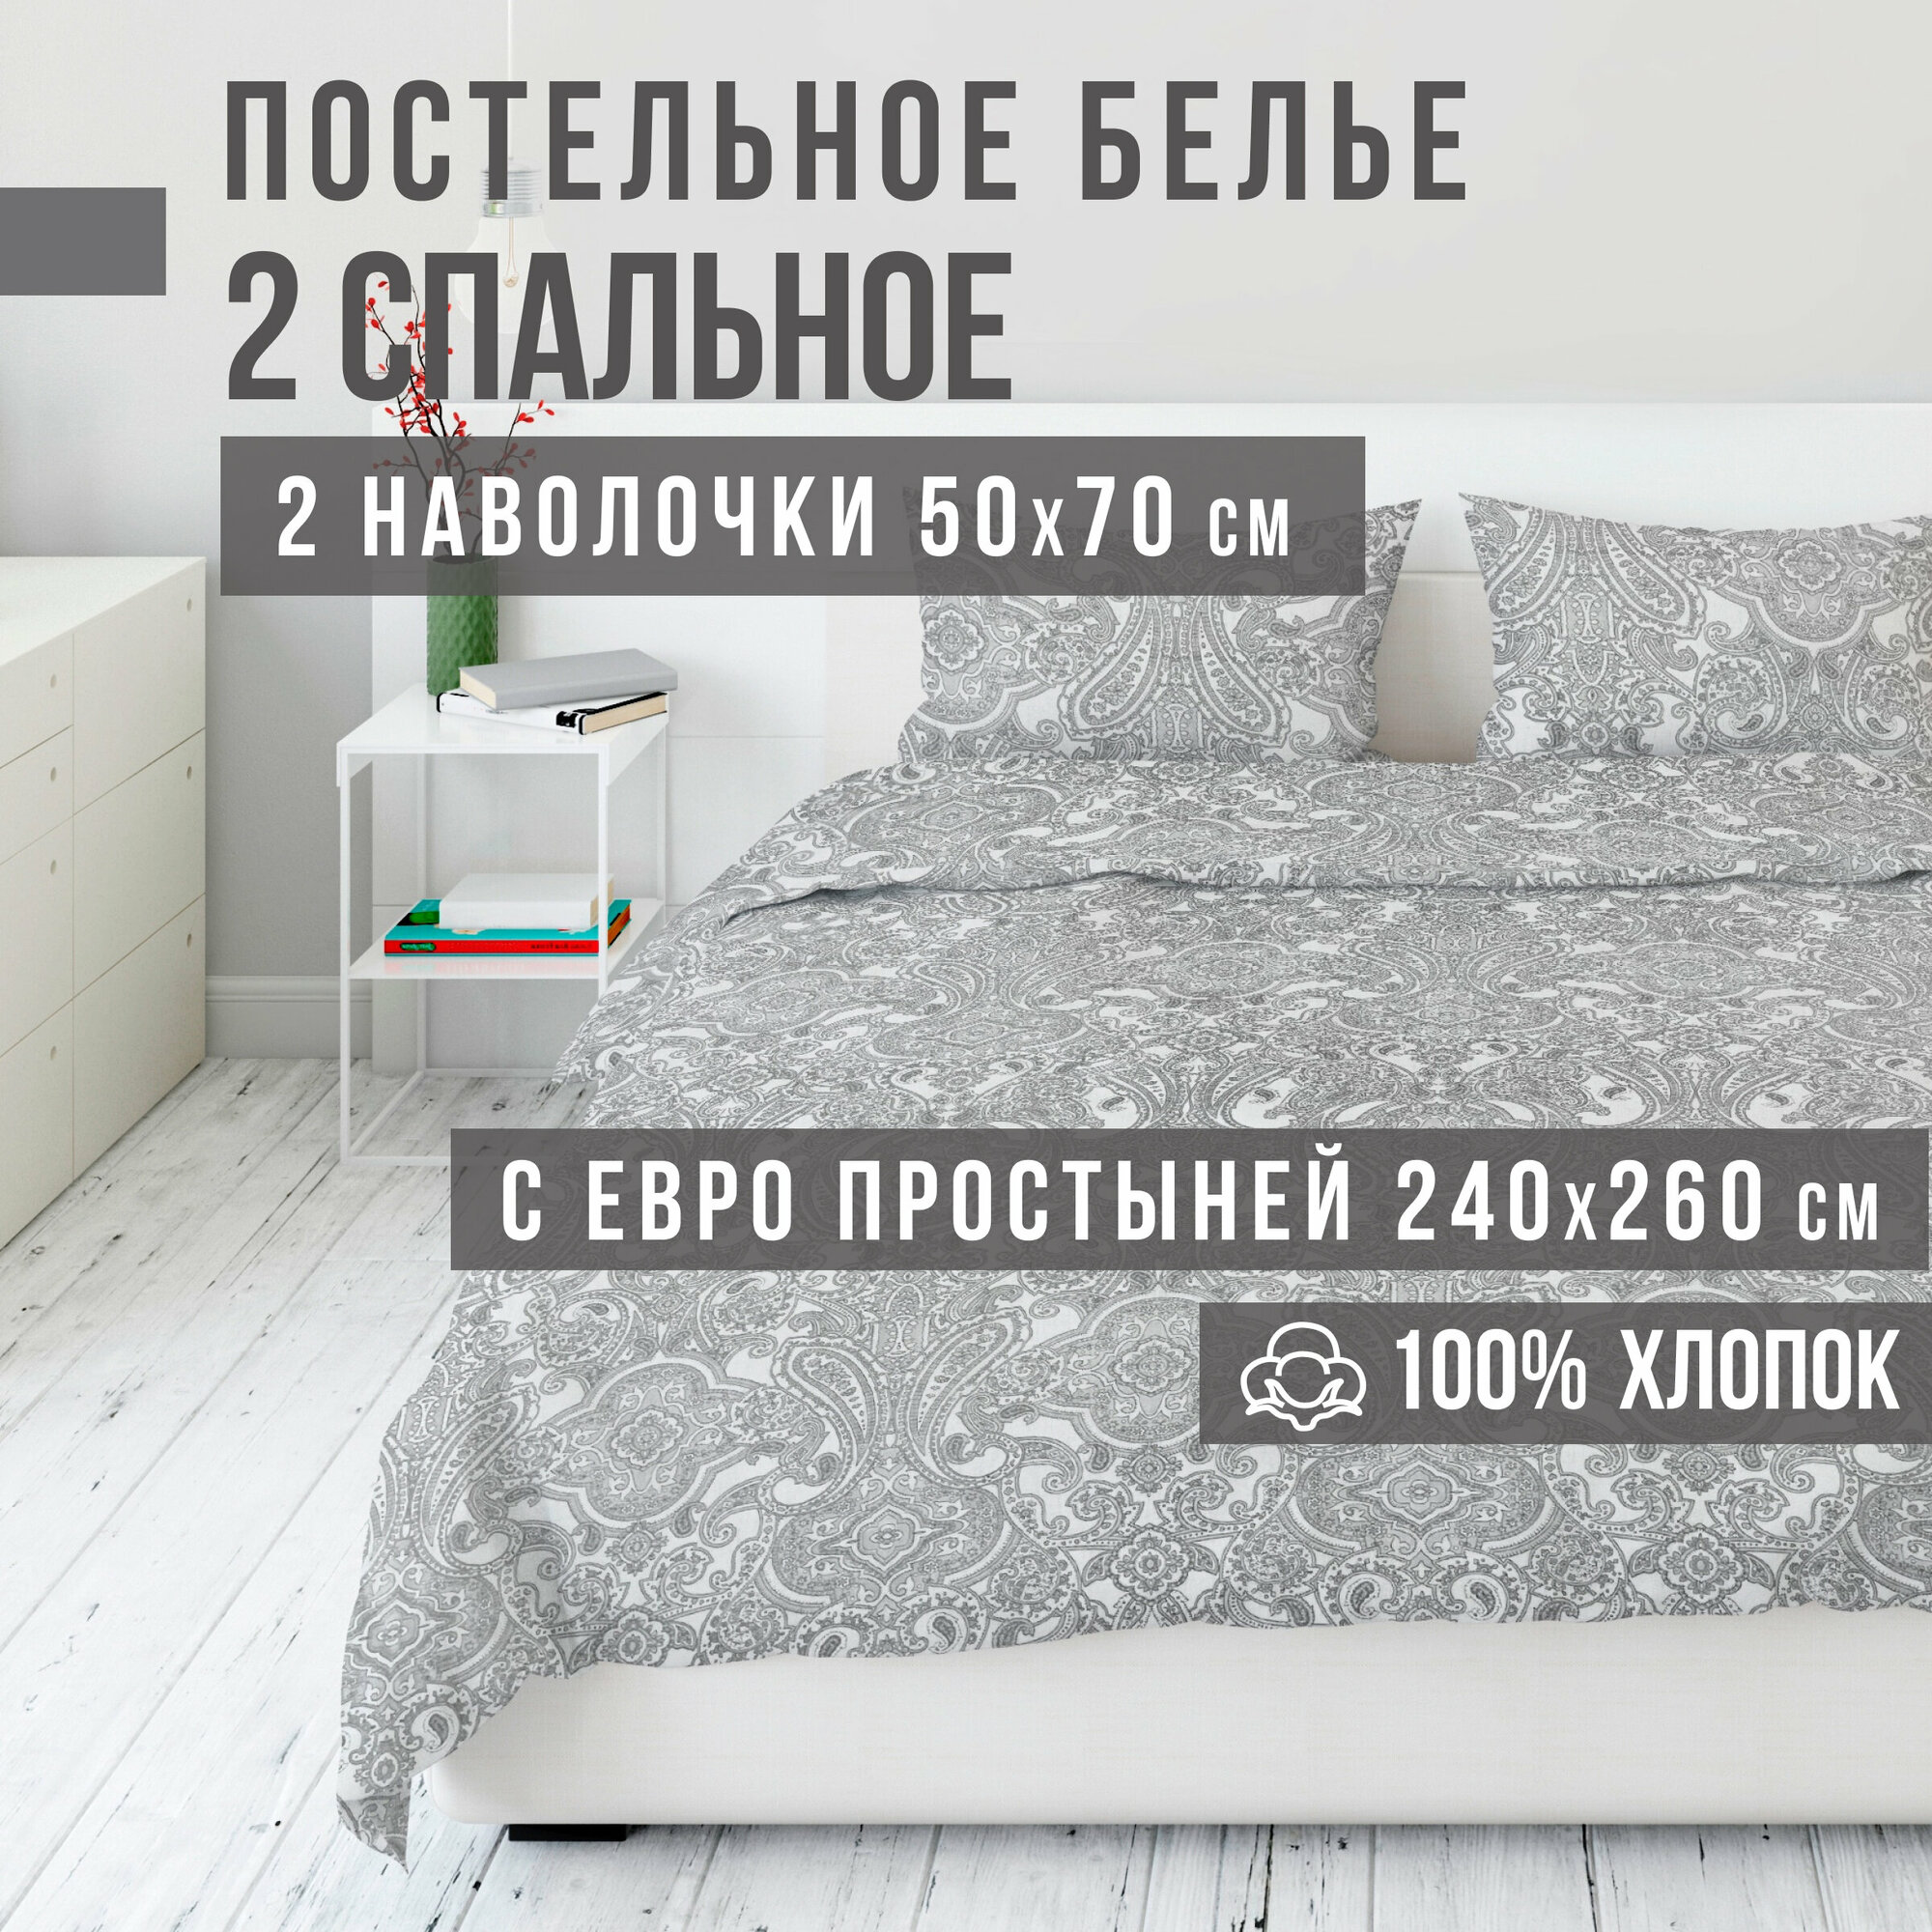 Комплект постельного белья VENTURA LIFE Ранфорс 2 спальный, евро простыня (50х70), Северная капля